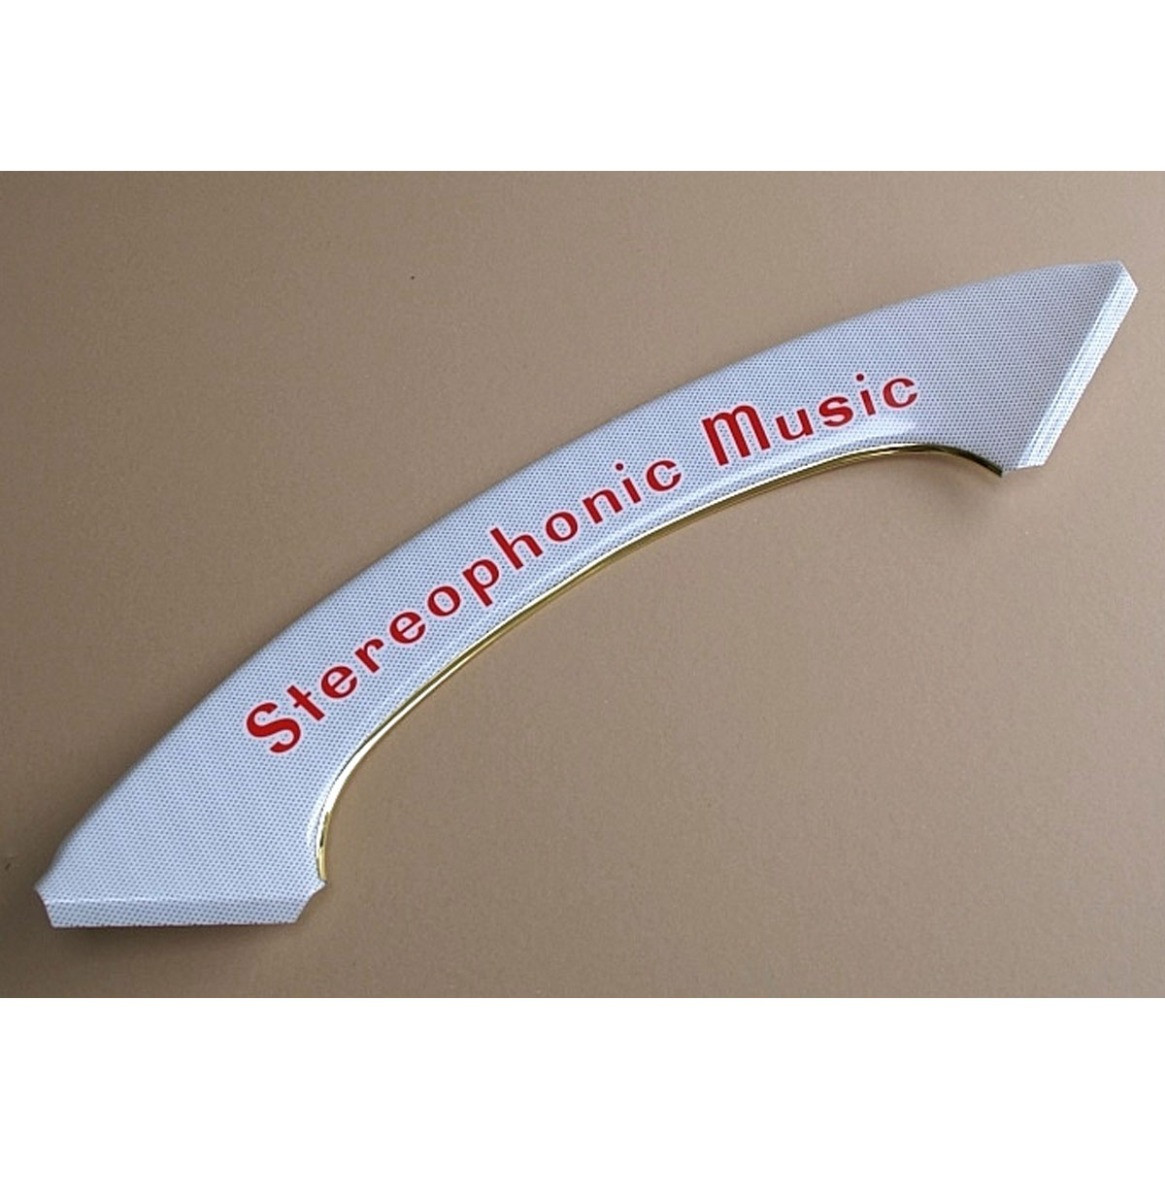 Wurlitzer Boog Stereophonic Music 2500 Series